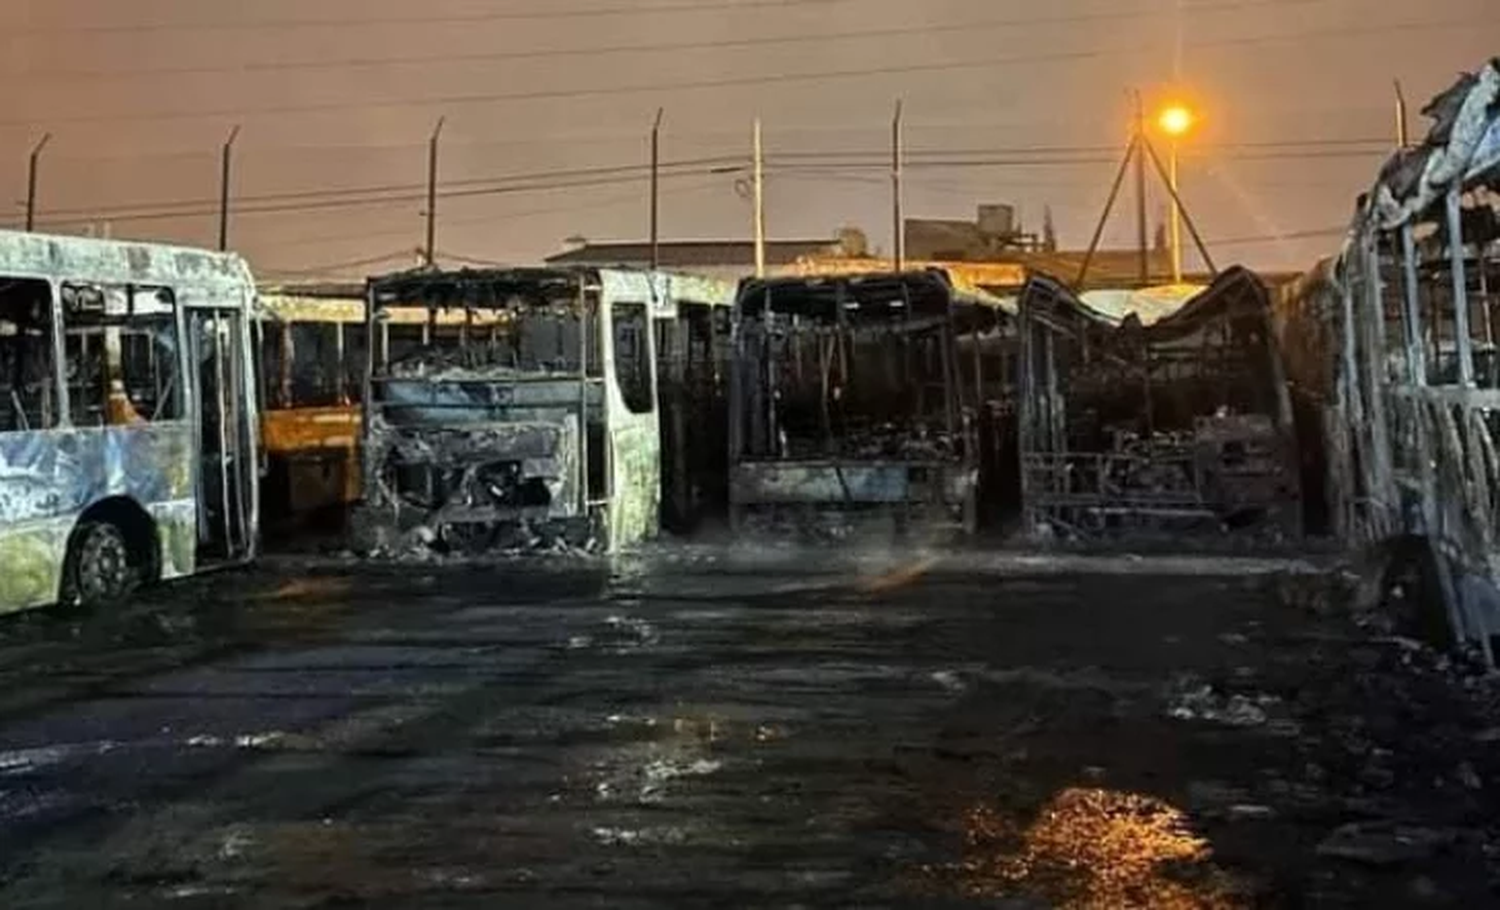 Incendio en la terminal de la empresa TALP en La Tablada: "La costera" 338 y línea 406 con demoras